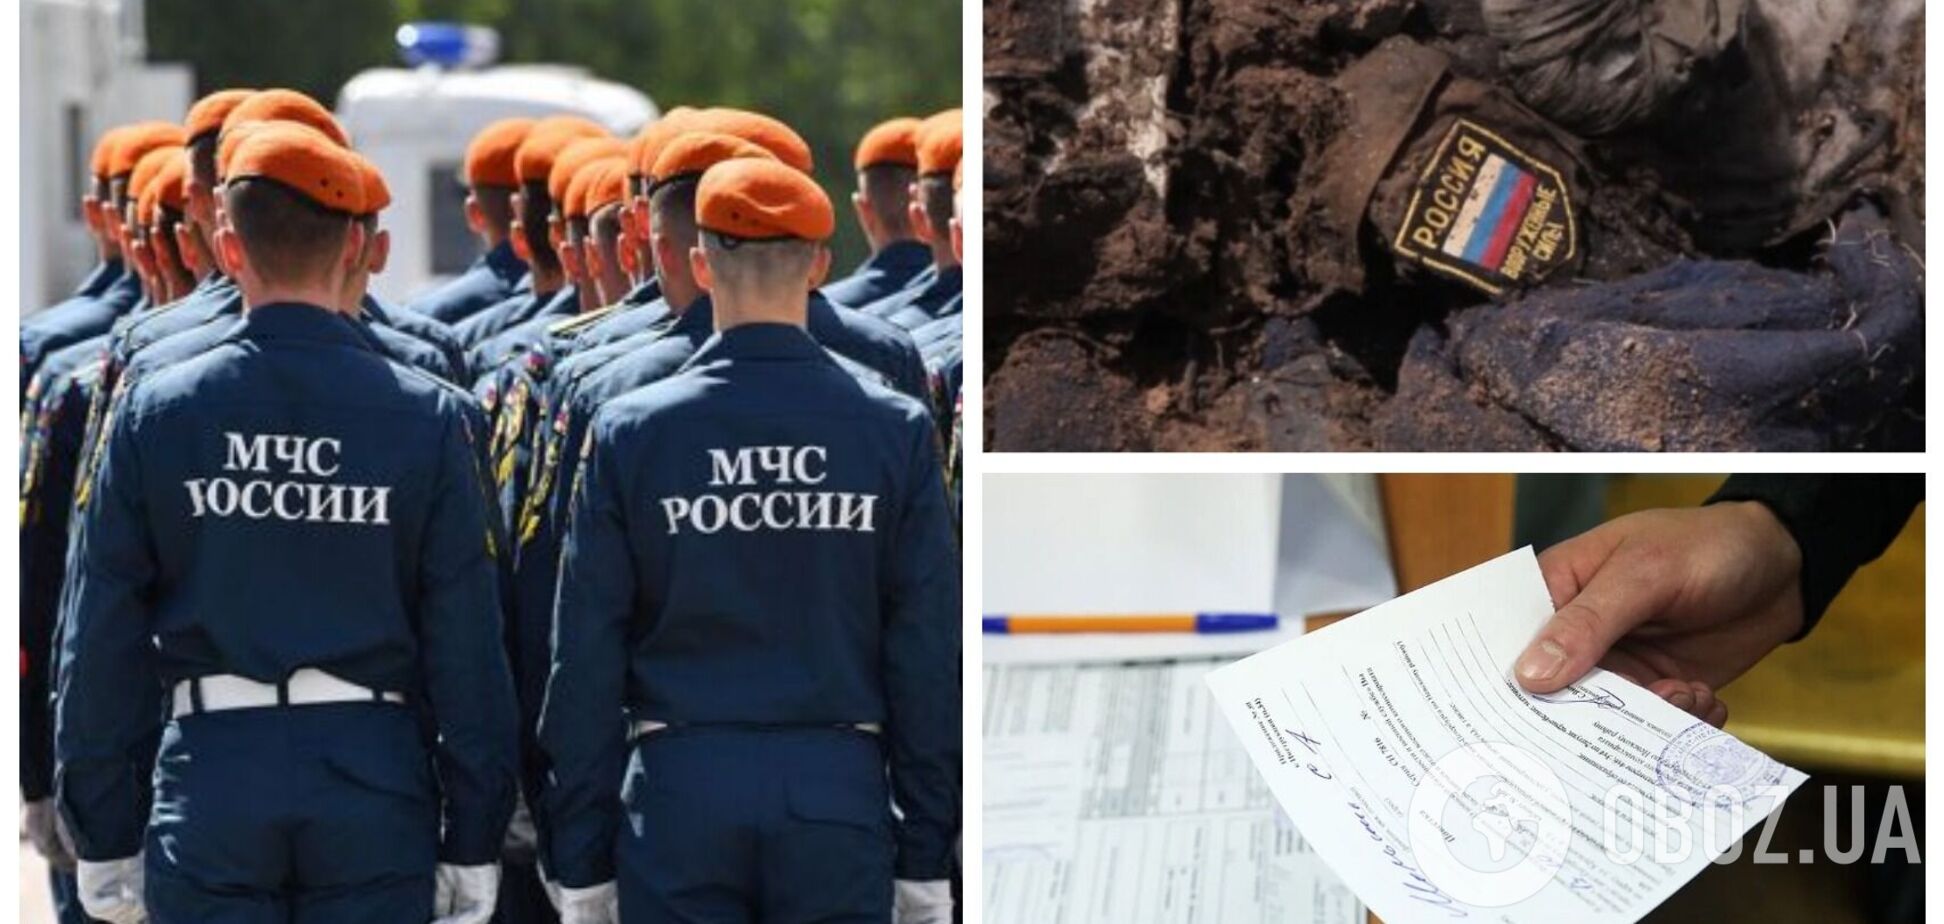 У Росії почали масово роздавати повістки для призову до армії працівникам МНС